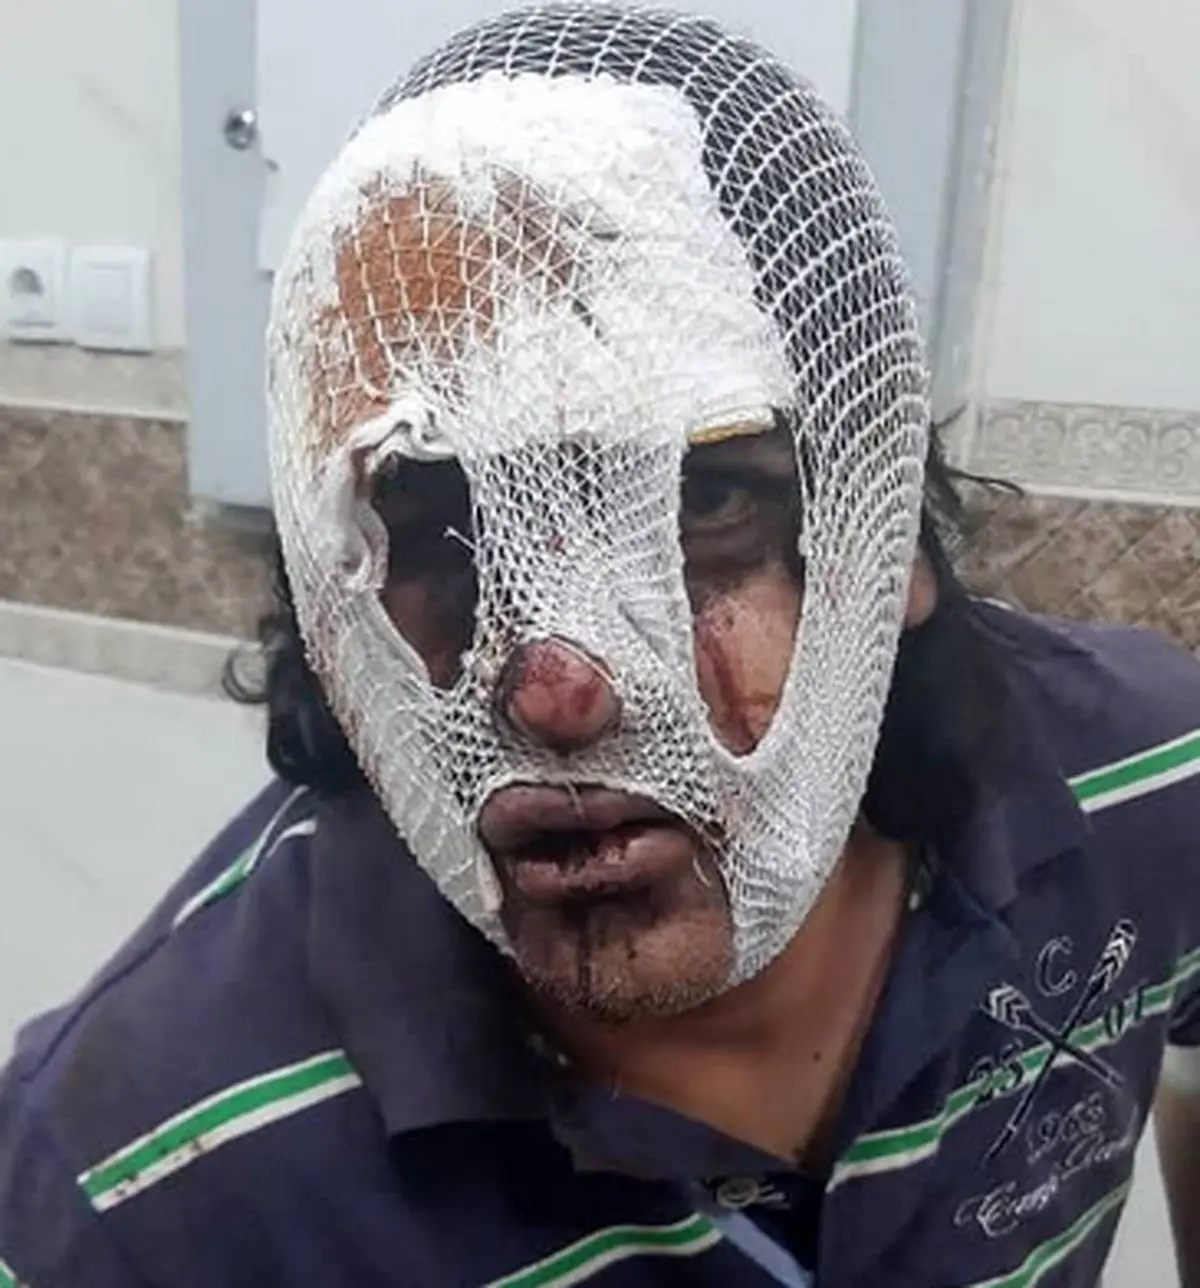 زورگیران خشن به راننده اسنپ کرمانشاه حمله کردند